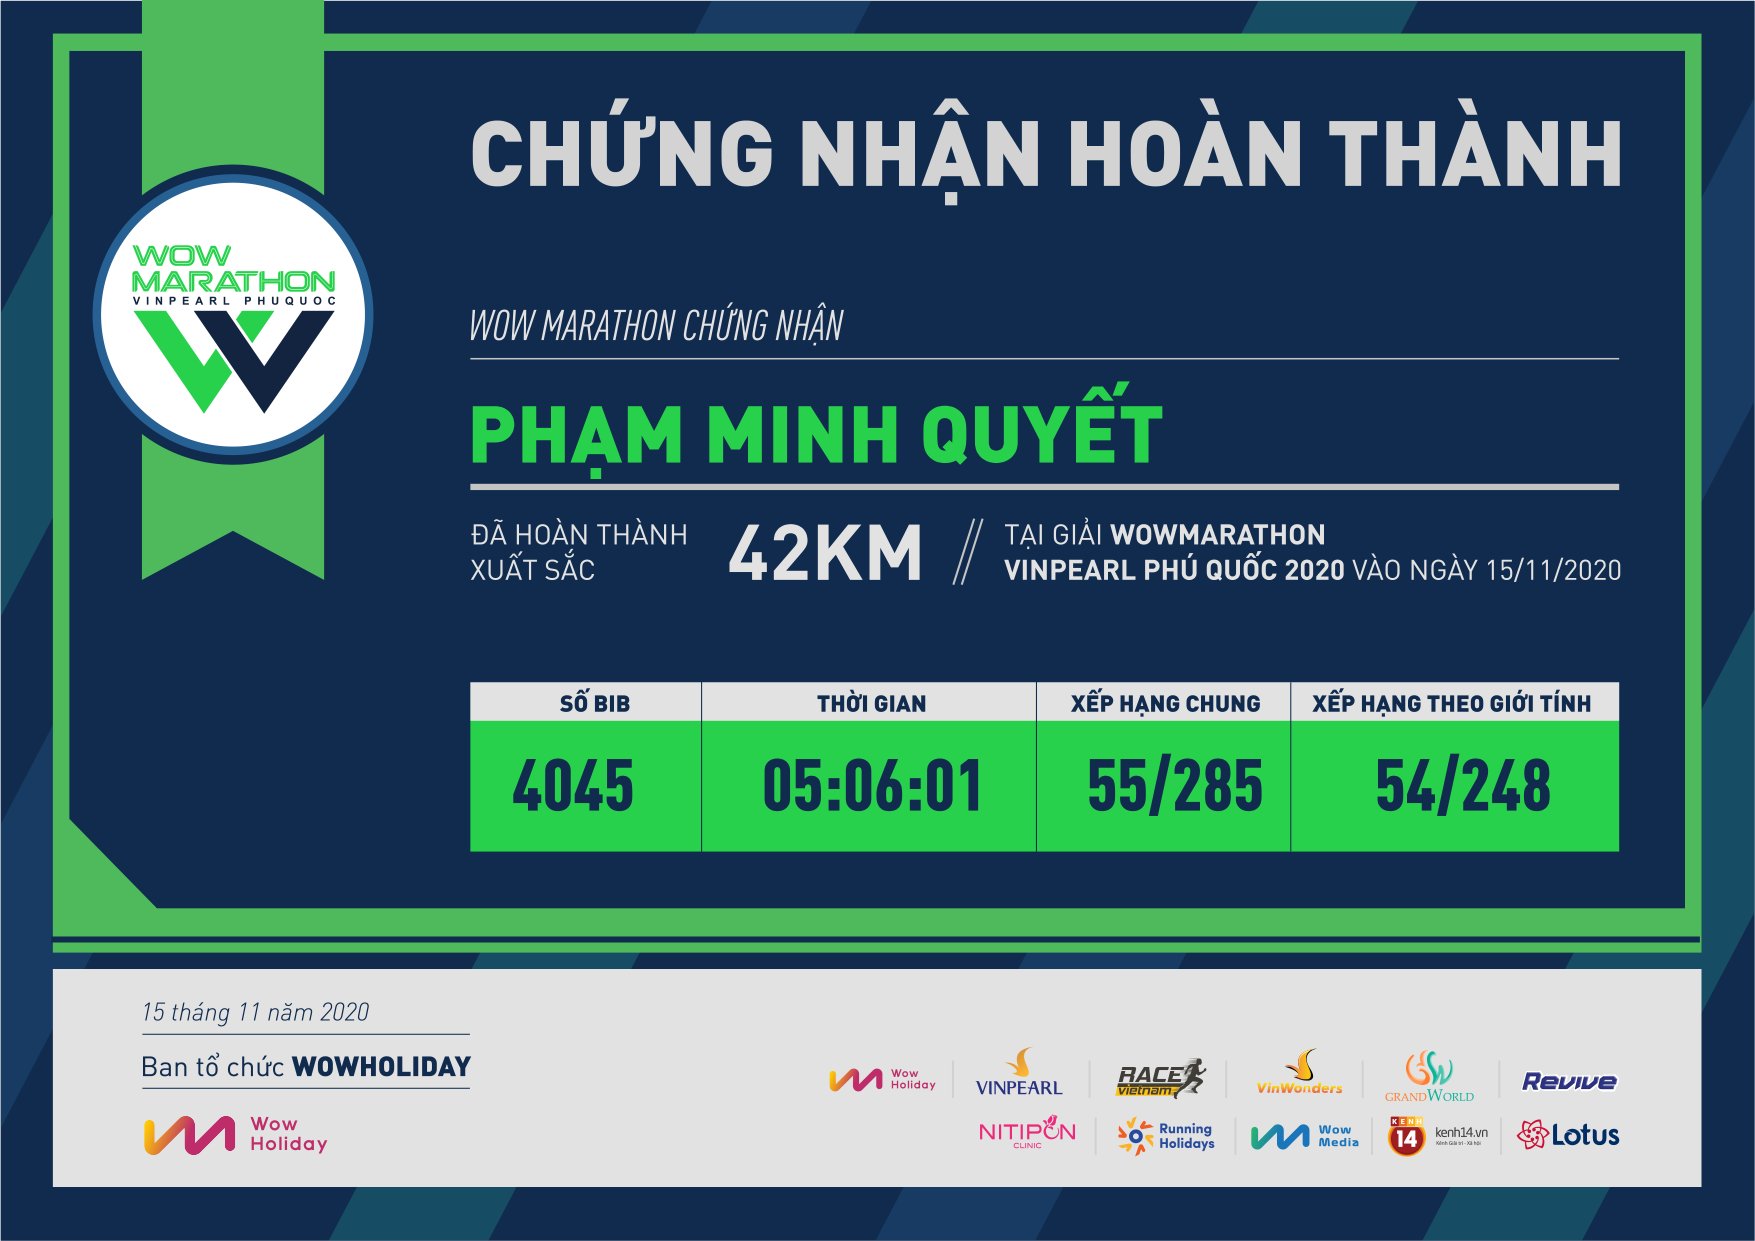 4045 - Phạm Minh Quyết